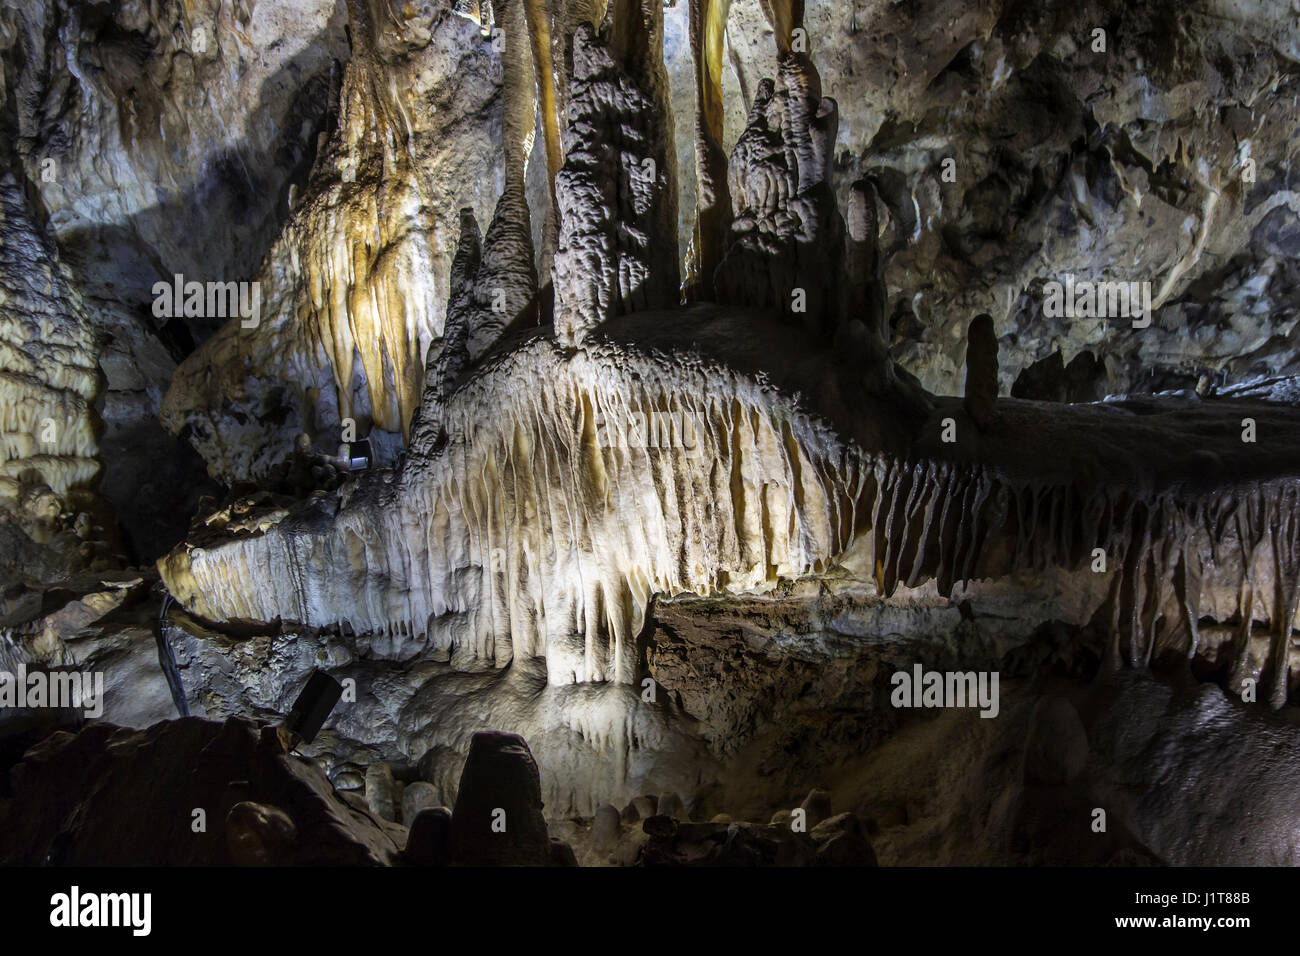 Schmelzstein / Höhle Vorhänge, blattförmigen Ablagerungen von Calcit abgehängte Decke in den Höhlen von Han-Sur-Lesse / Grottes de Han, Ardennen, Belgien Stockfoto